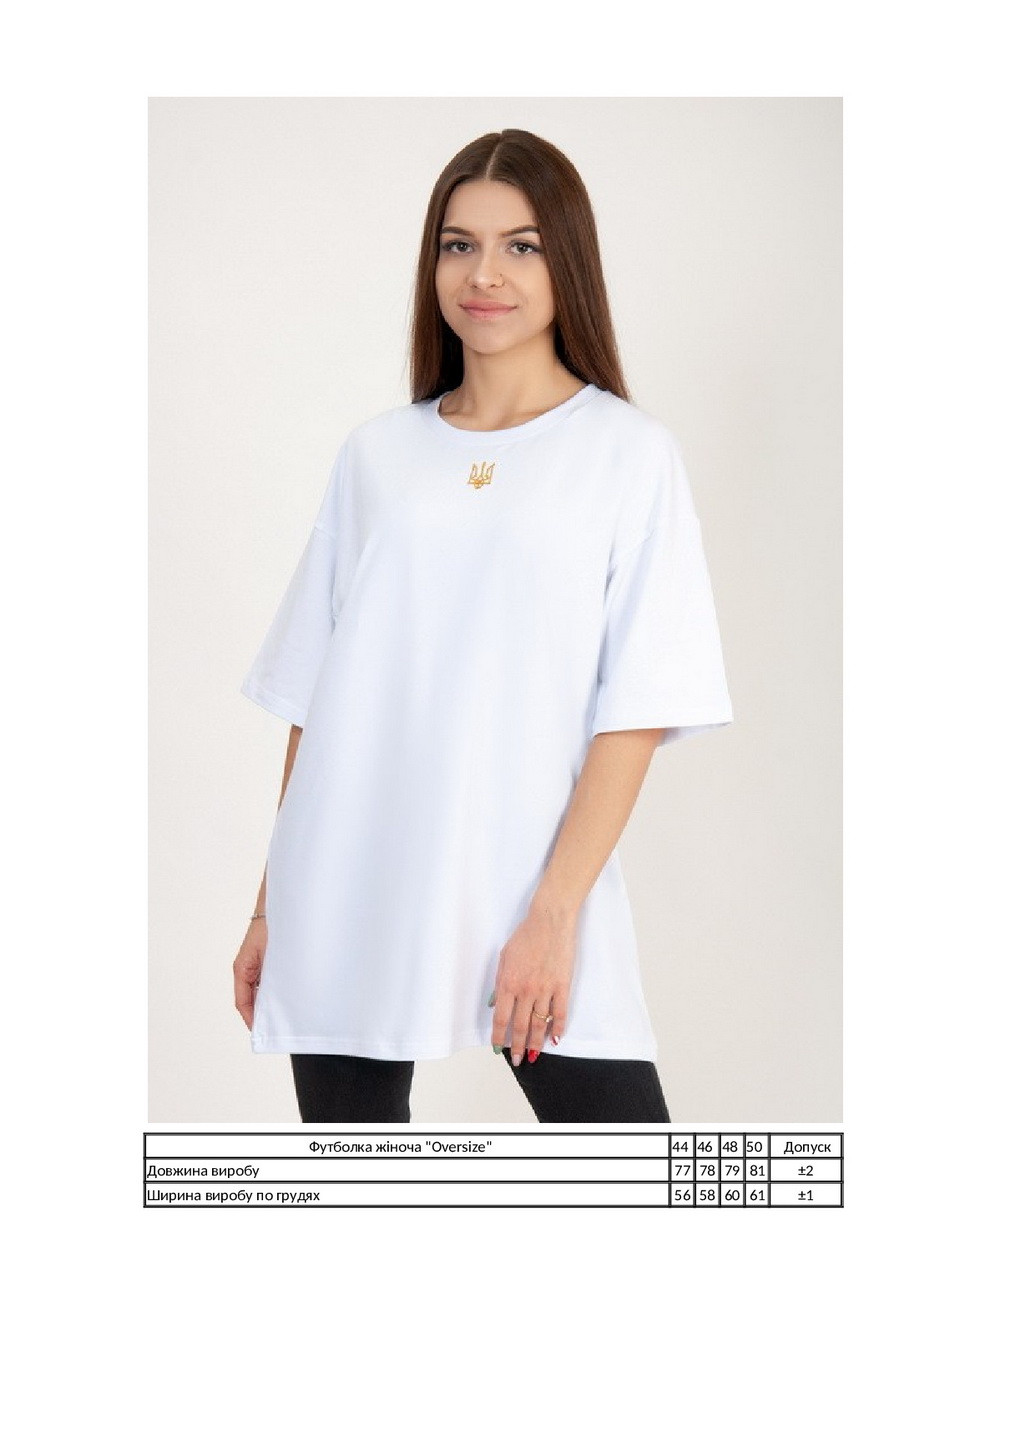 Белая летняя футболка женская "oversize" с коротким рукавом KINDER MODE